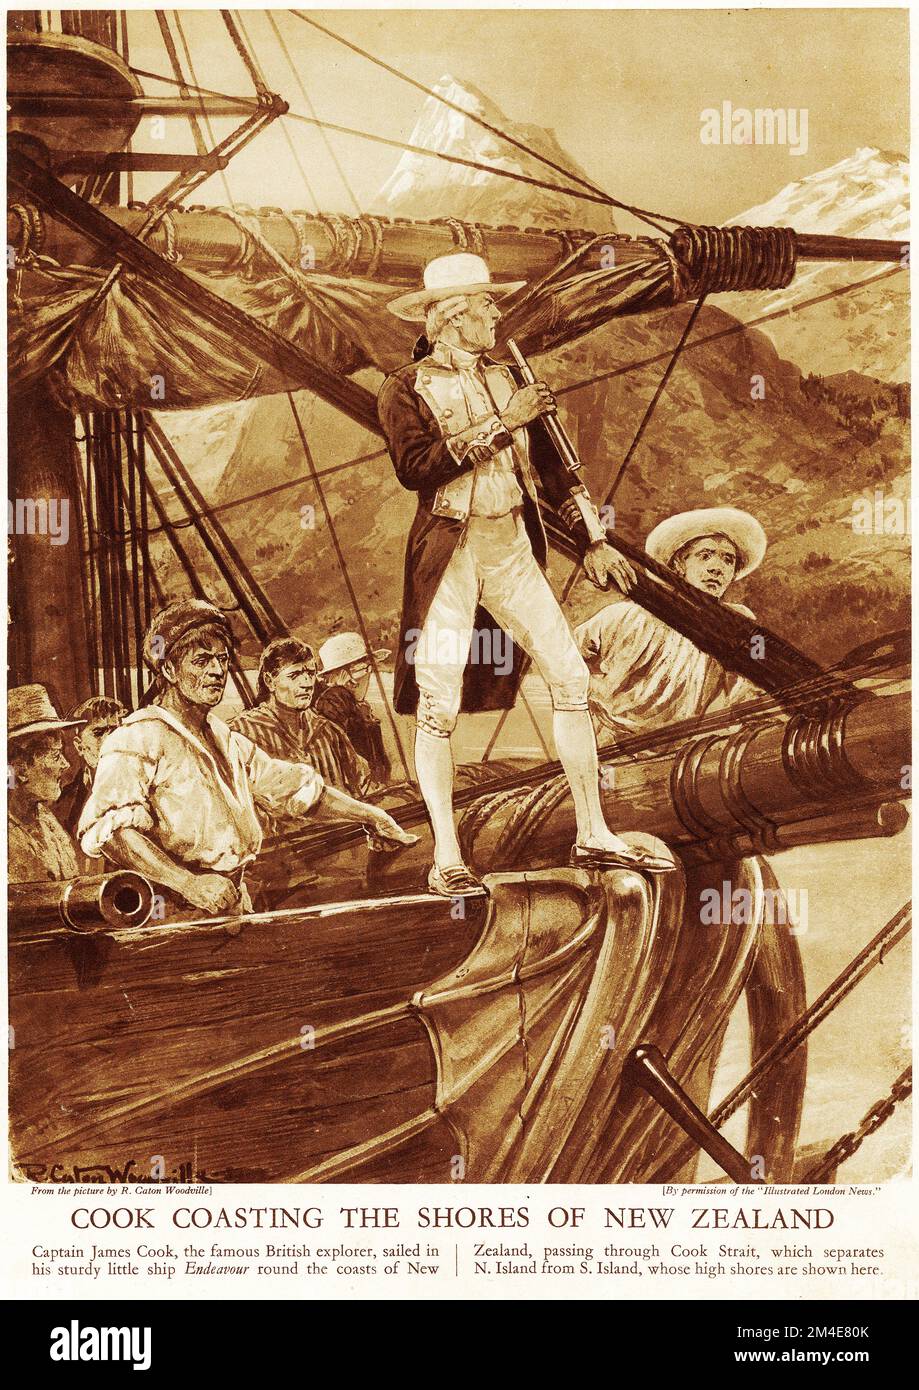 Demi-ton du capitaine James Cook en croisière sur les côtes de la Nouvelle-Zélande, portant un chapeau très fantaisiste ! D'une publication éducative en 1927. Cook a effectué trois visites en Nouvelle-Zélande en 1700s Banque D'Images